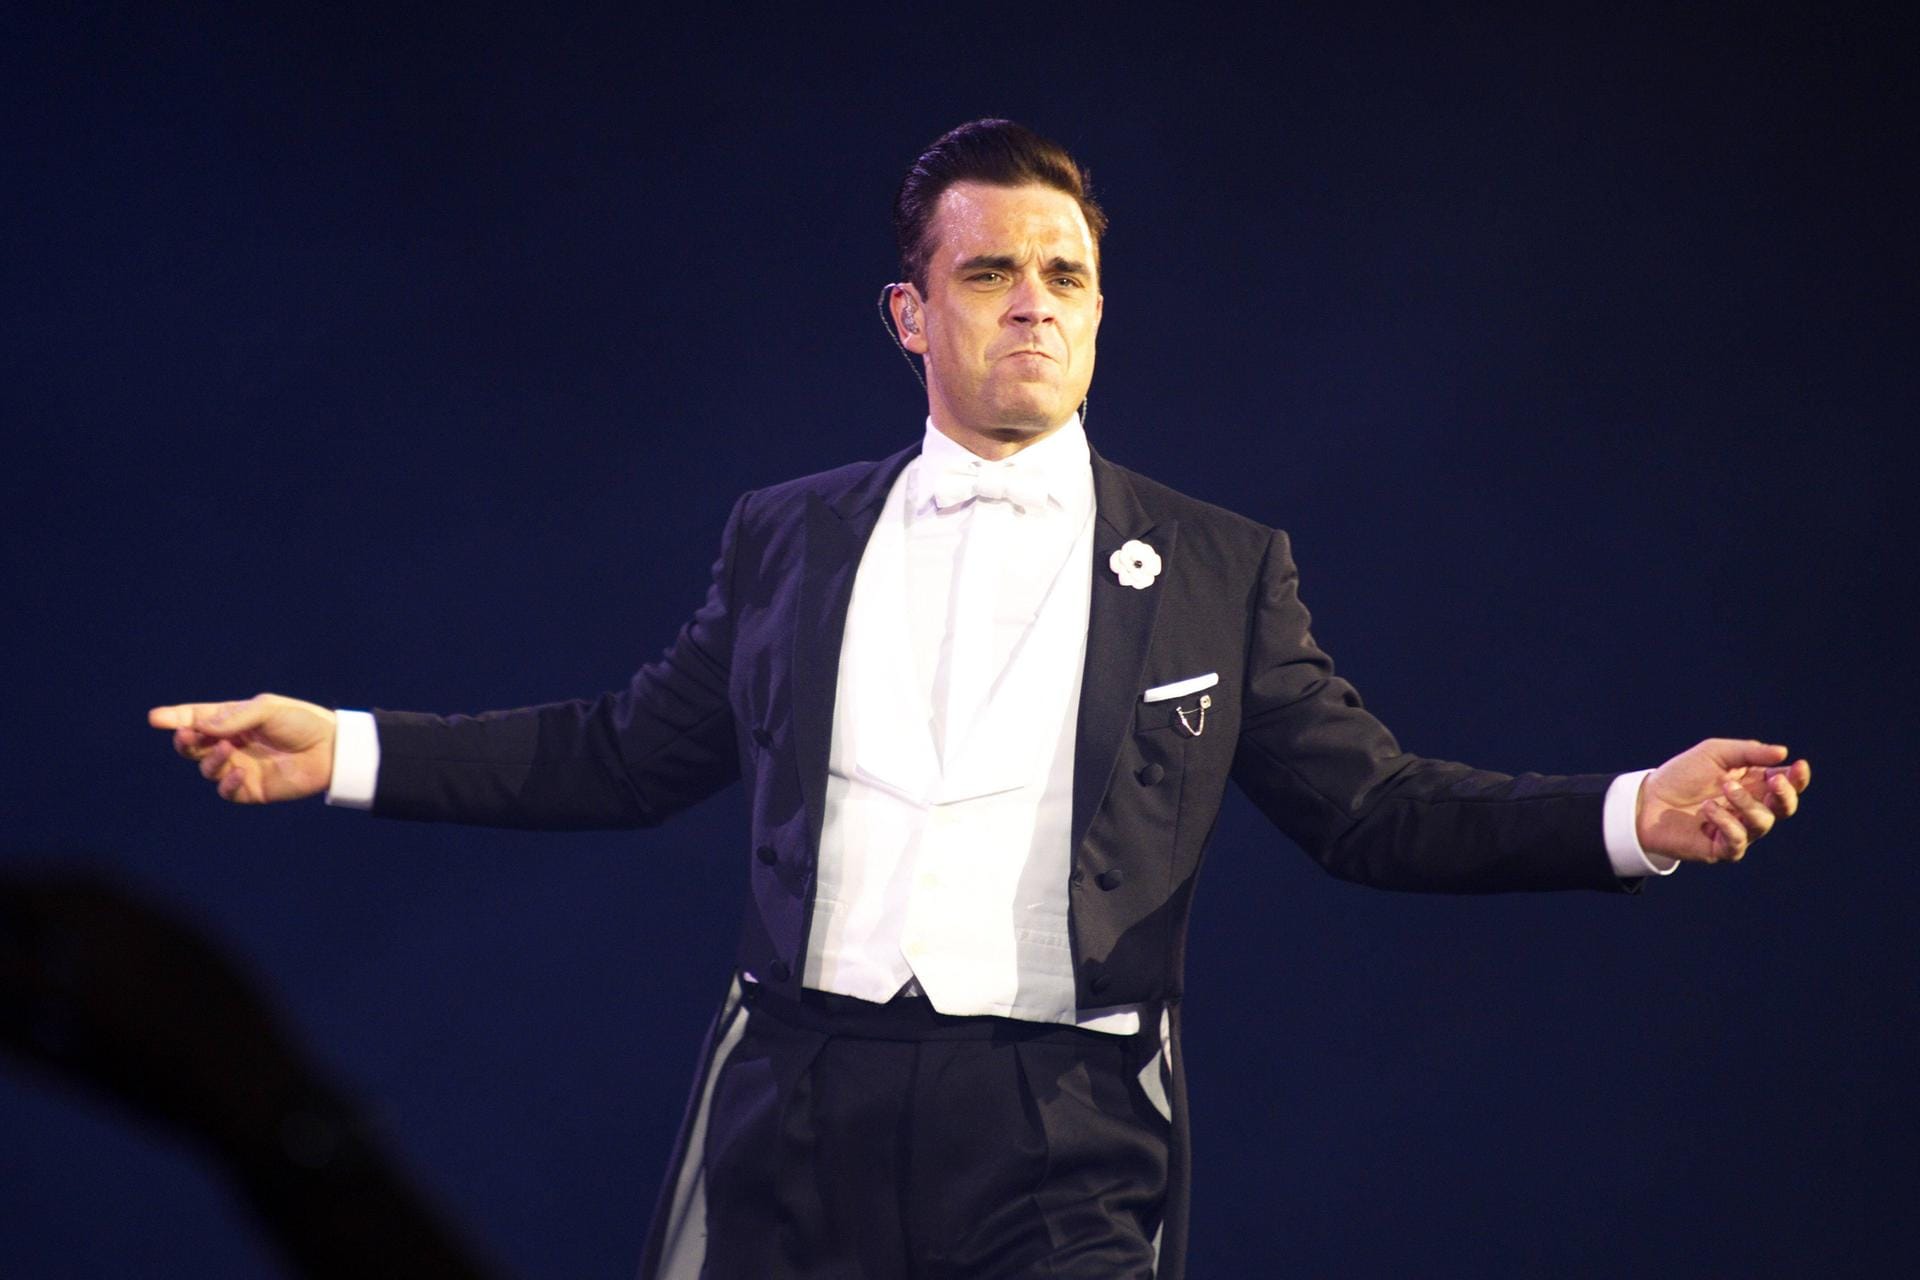 Ganz schick auf der Bühne: Robbie Williams hat auch mit Erfolg zwei Swingplatten veröffentlicht.